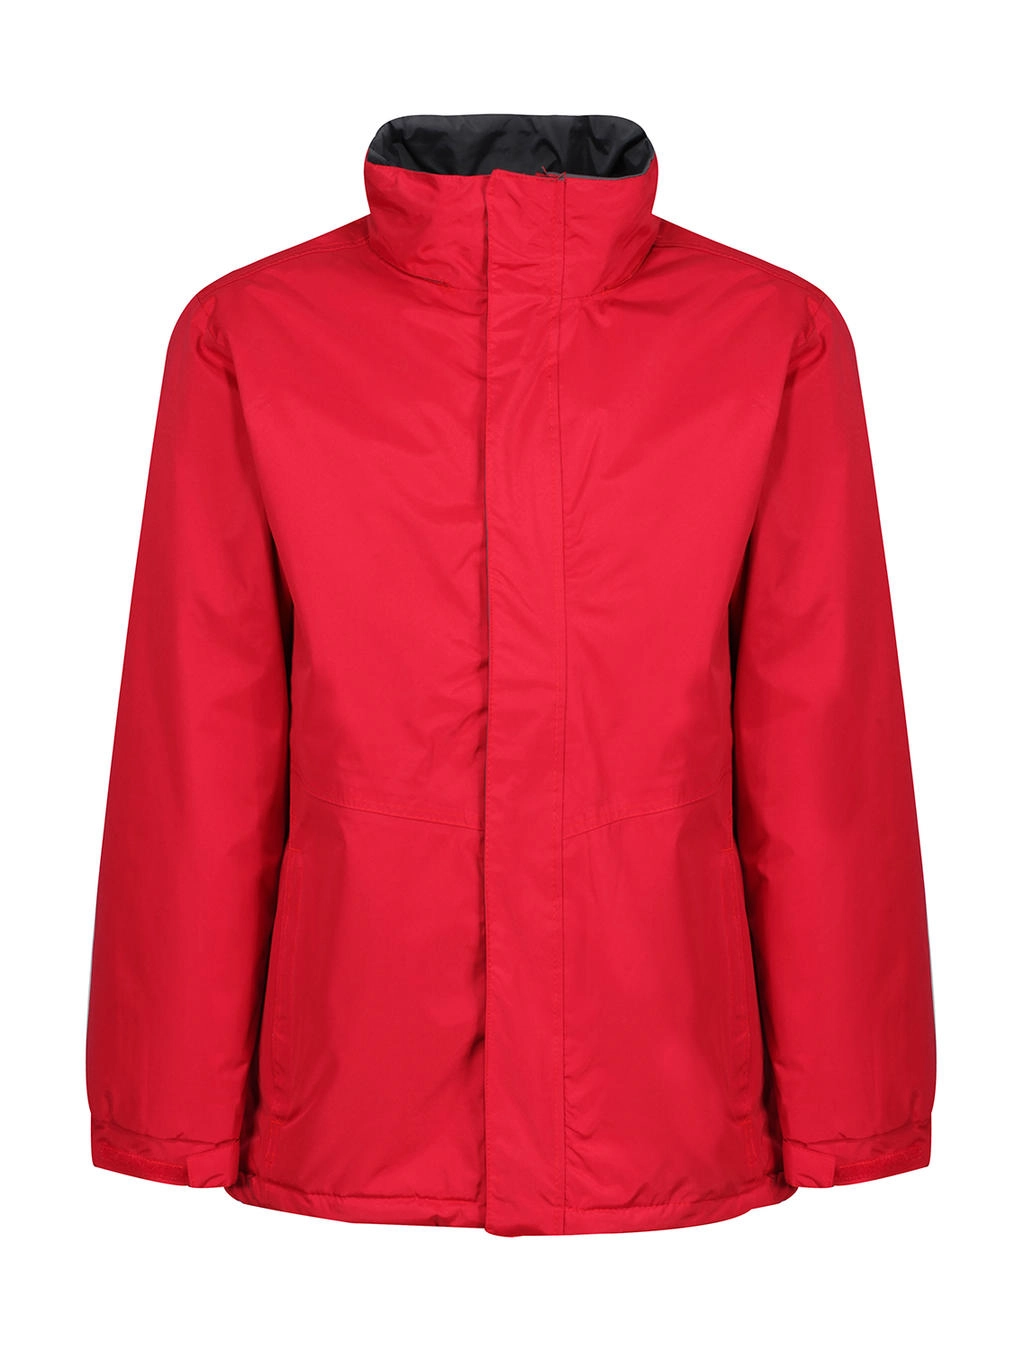 Beauford Insulated Jacket zum Besticken und Bedrucken in der Farbe Classic Red mit Ihren Logo, Schriftzug oder Motiv.